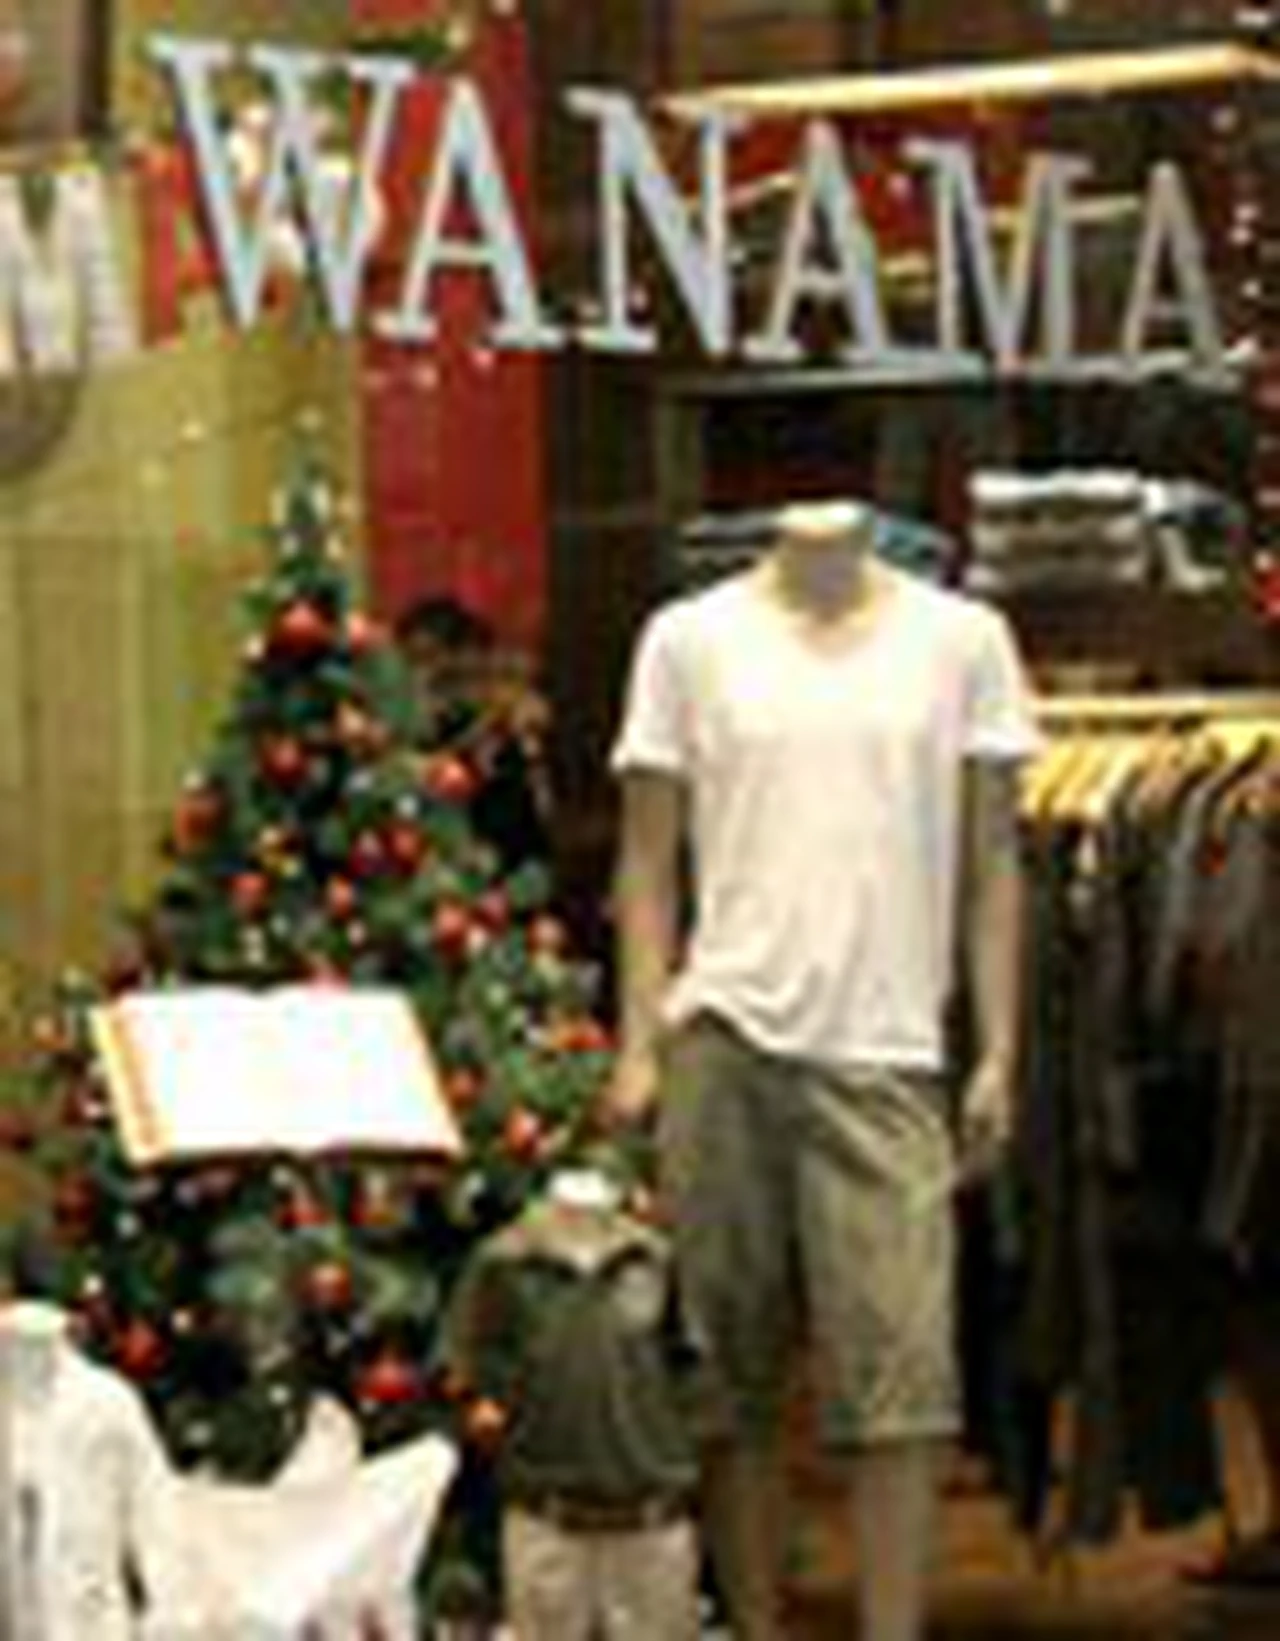 Los dueños de la marca Wanama, a concurso preventivo de acreedores